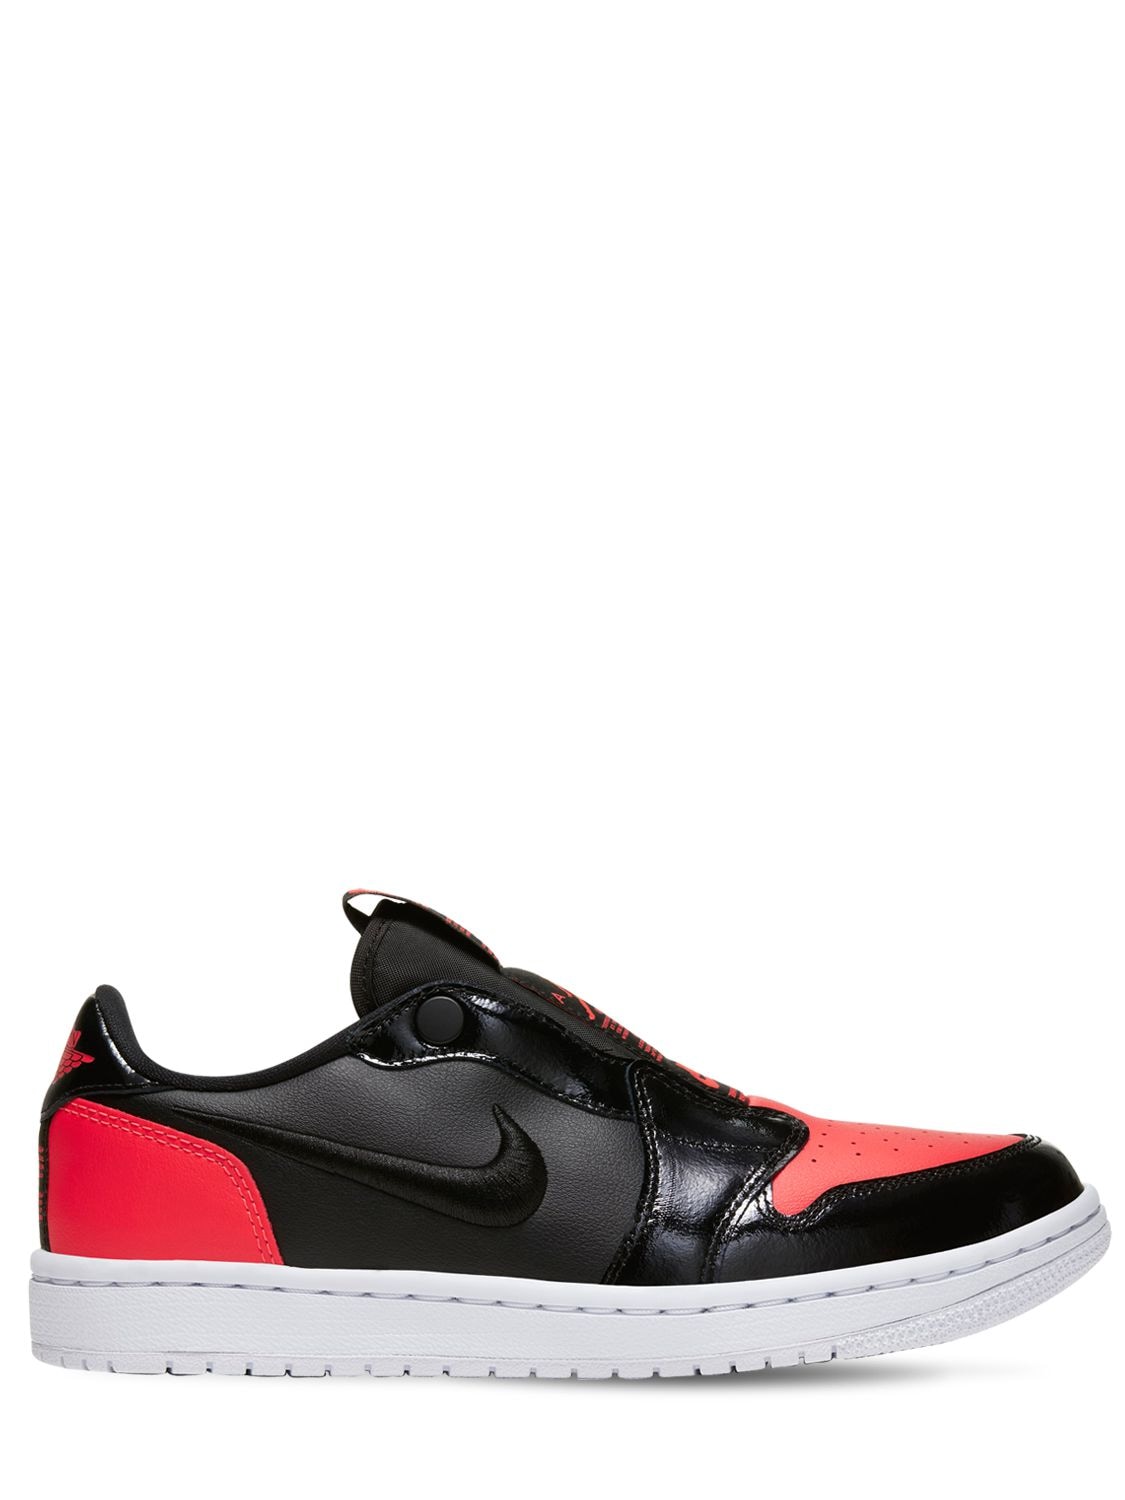 Nike Air Jordan 1 Retro Low Slip Sneakers In Bright Crimson